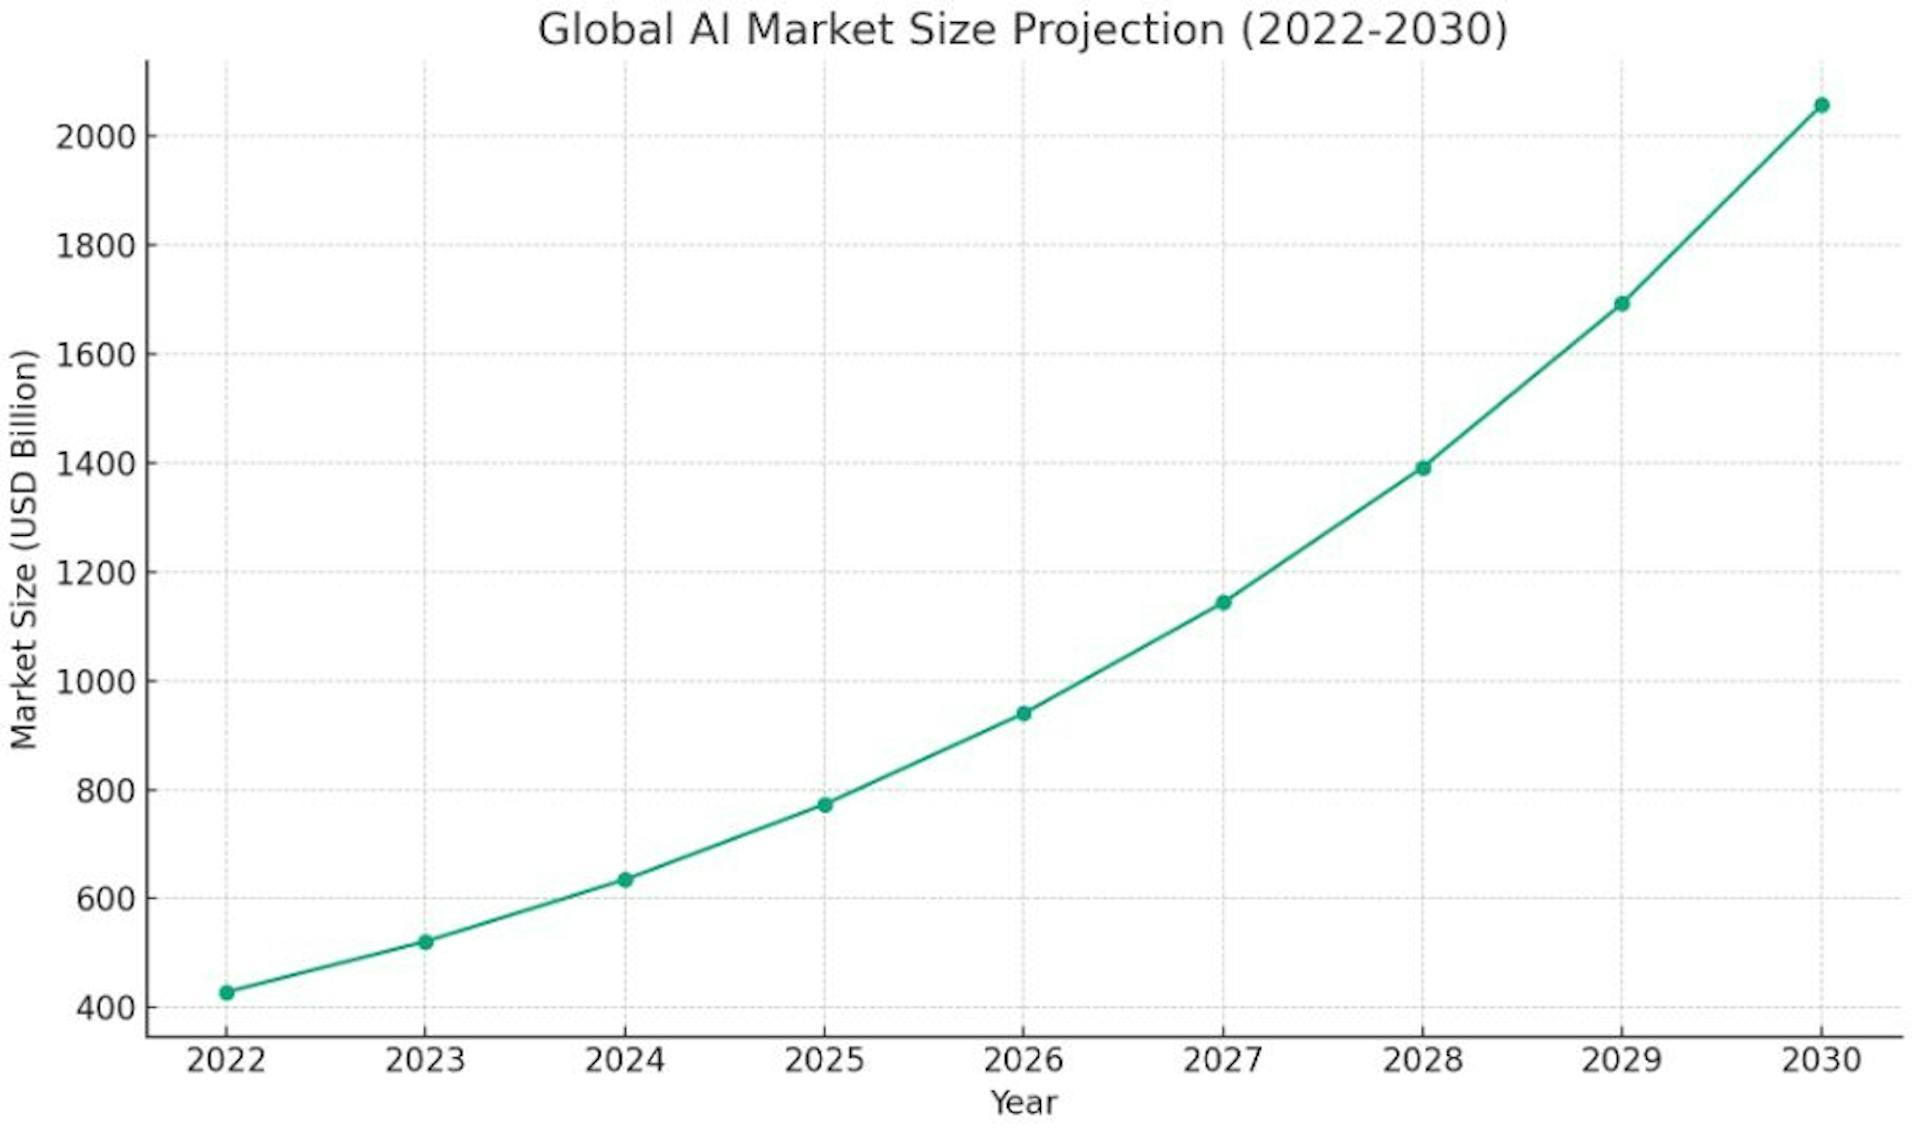 Biểu đồ minh họa sự tăng trưởng dự kiến của quy mô thị trường AI toàn cầu từ năm 2022 đến năm 2030.